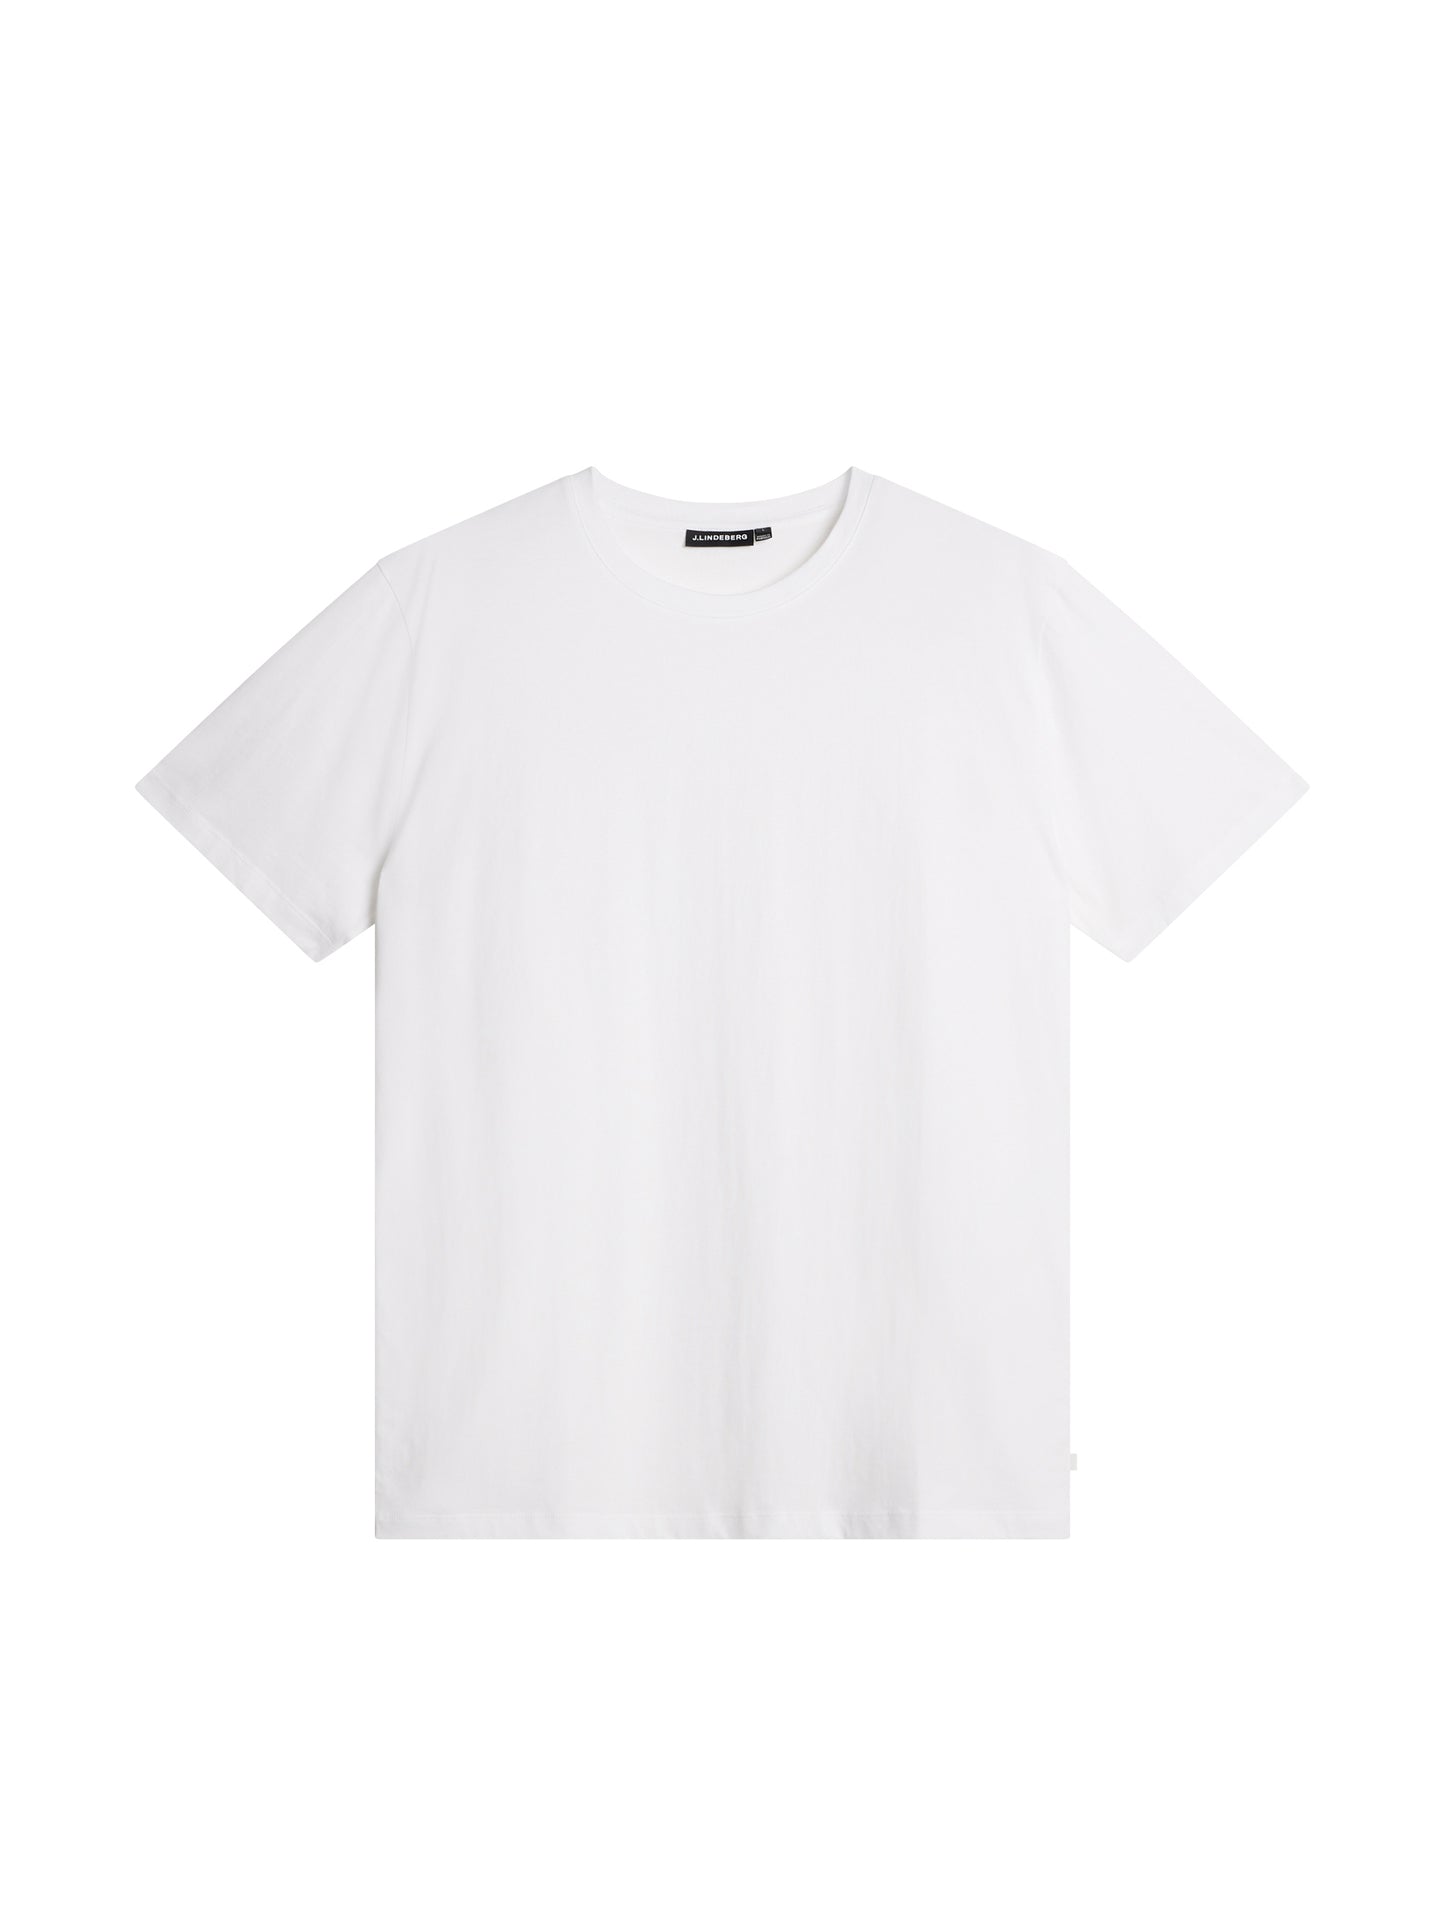 Sid Basic T-Shirt / White